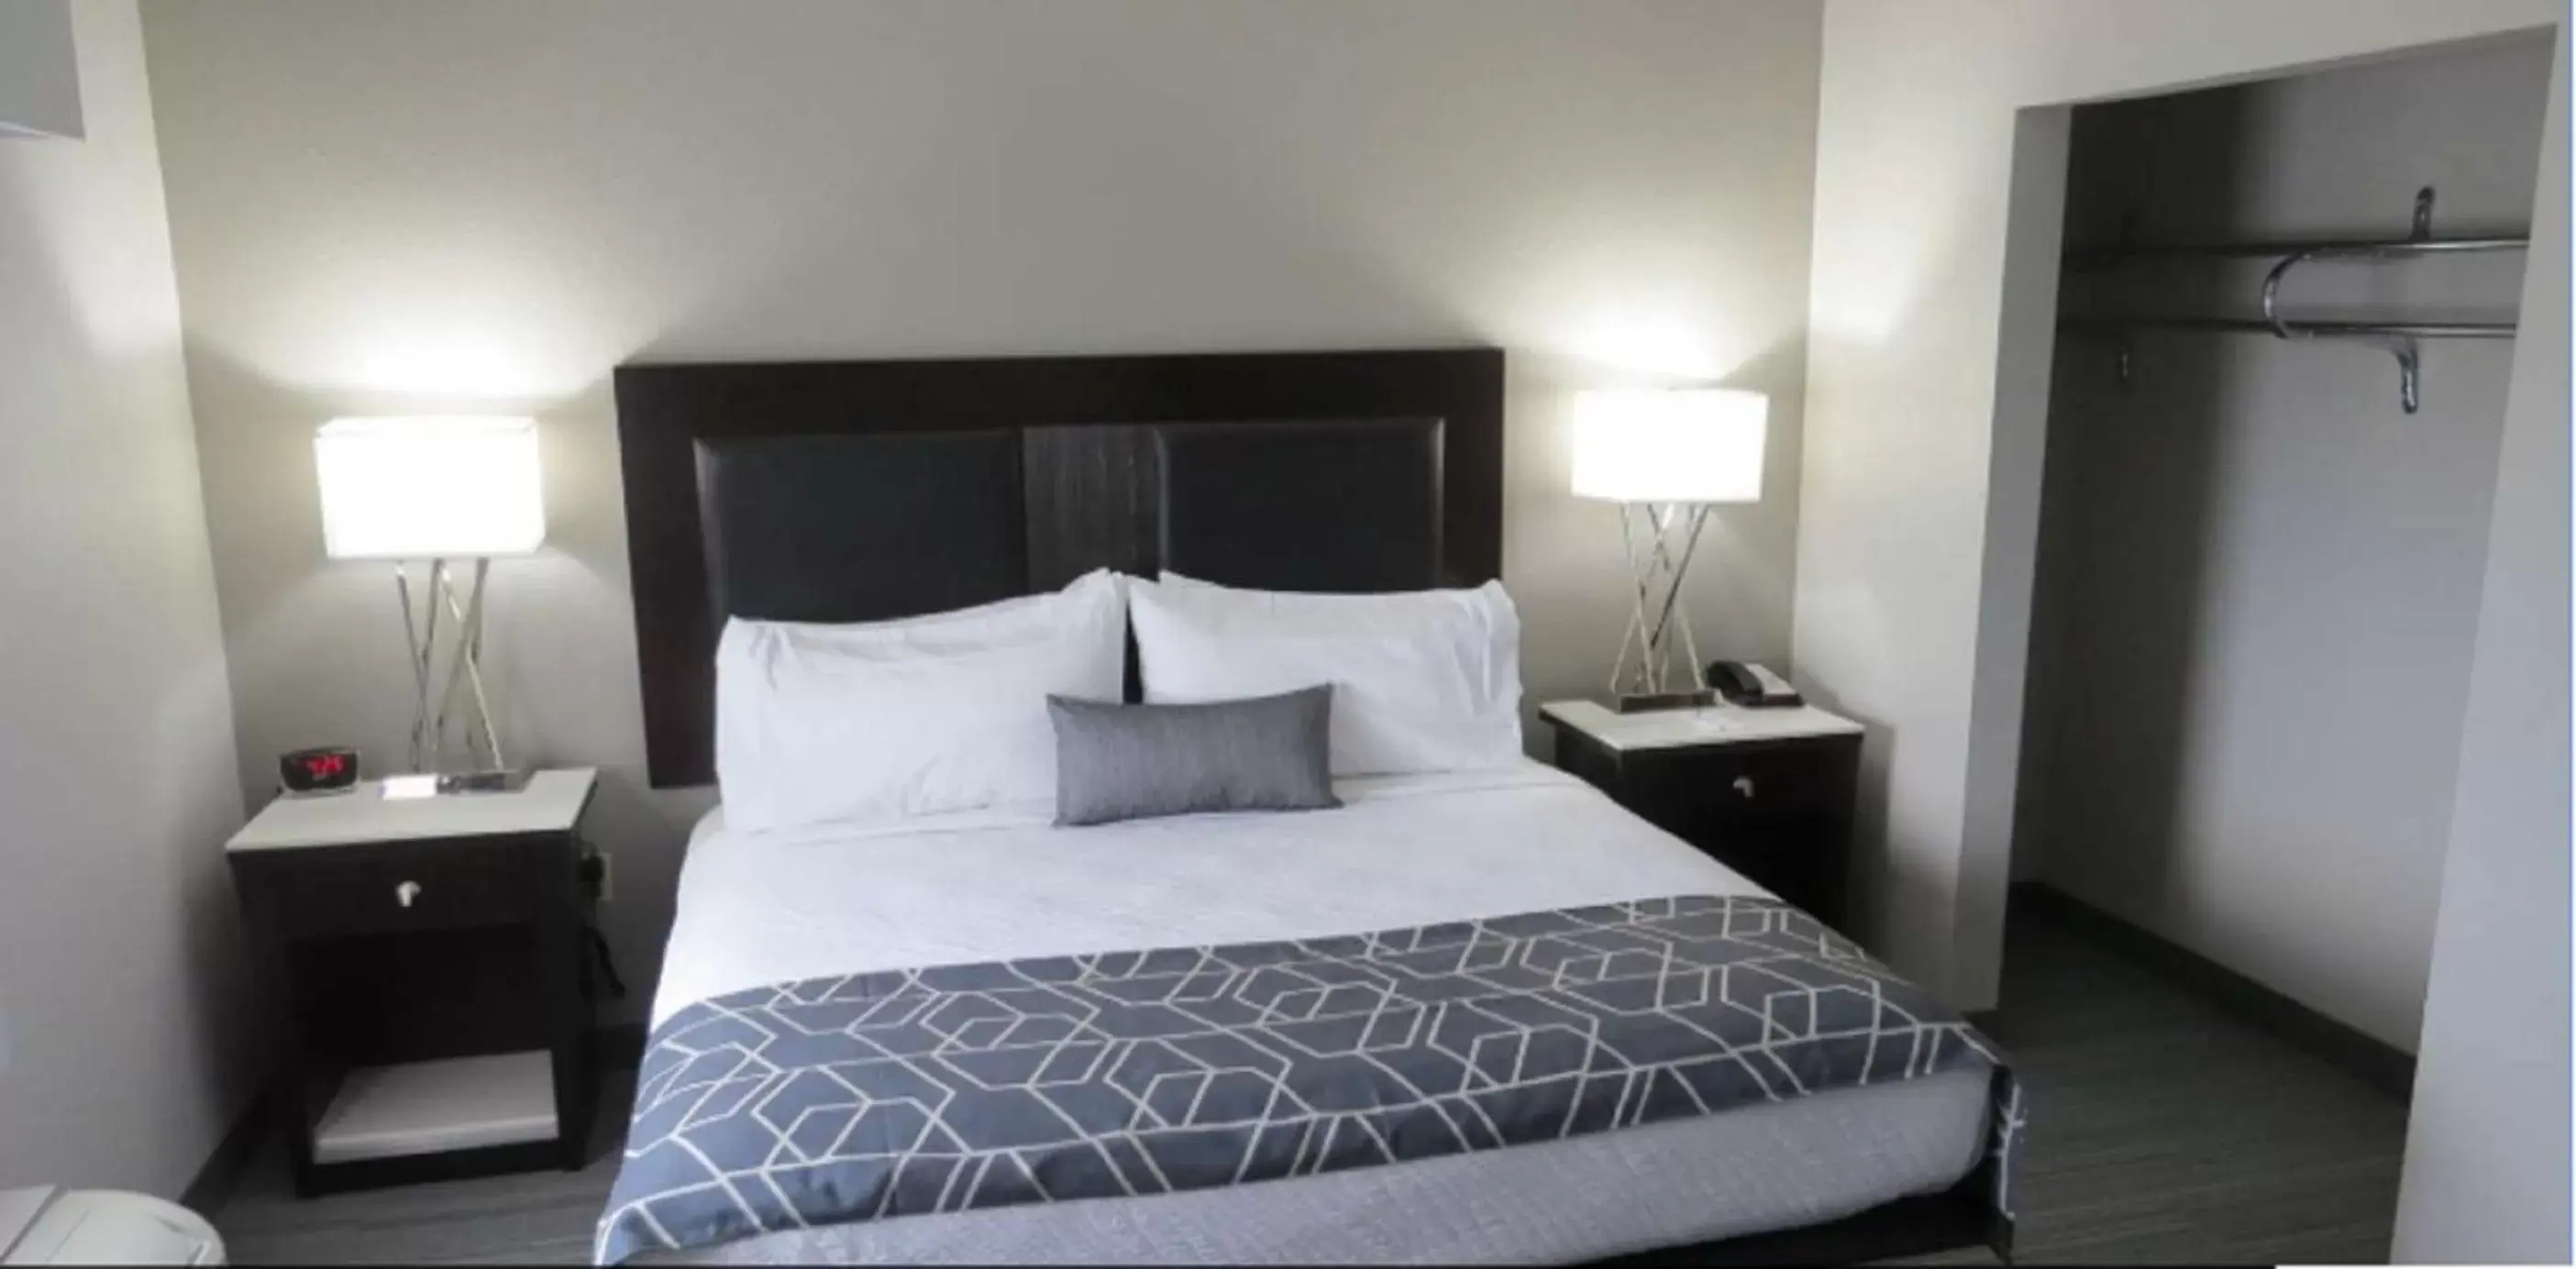 Bedroom, Bed in Best Western Plus Wilkes Barre-Scranton Airport Hotel